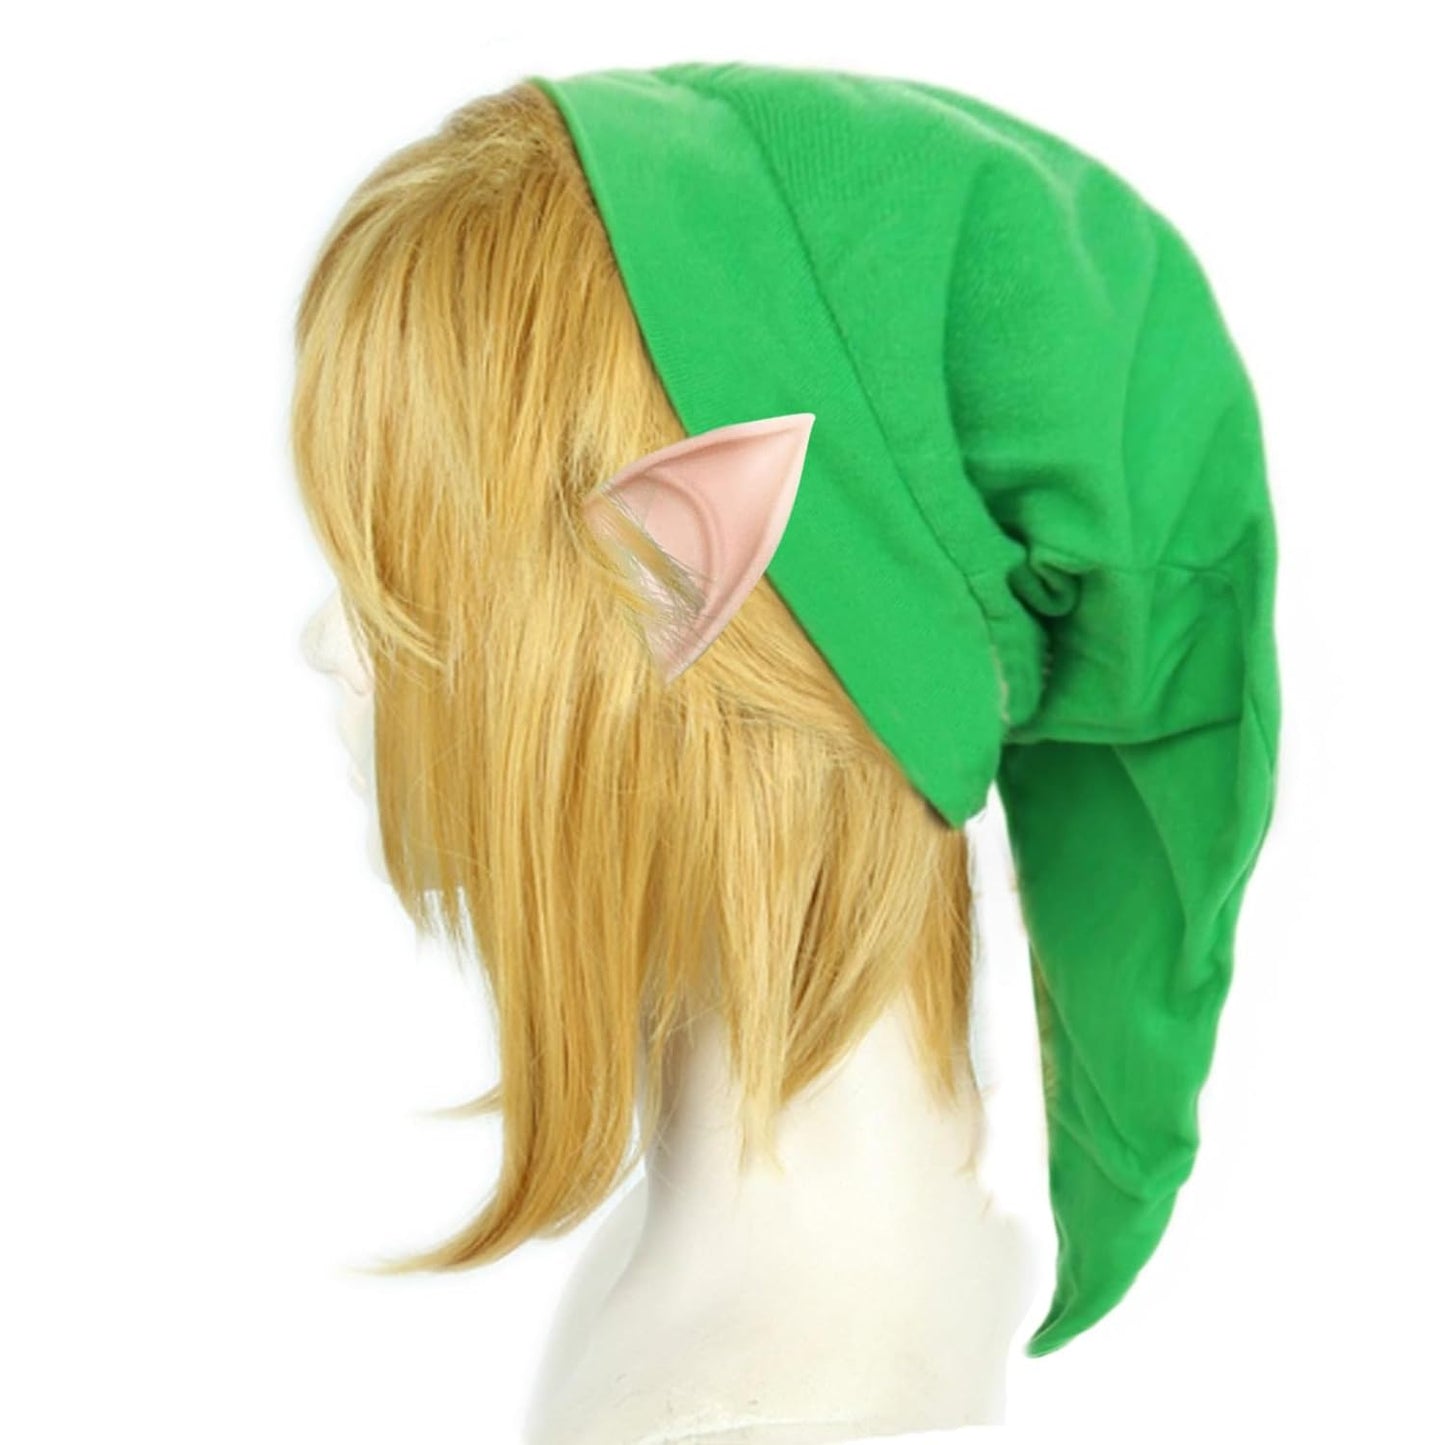 Embody the Hero: Breath of the Wild Zelda Link Wig